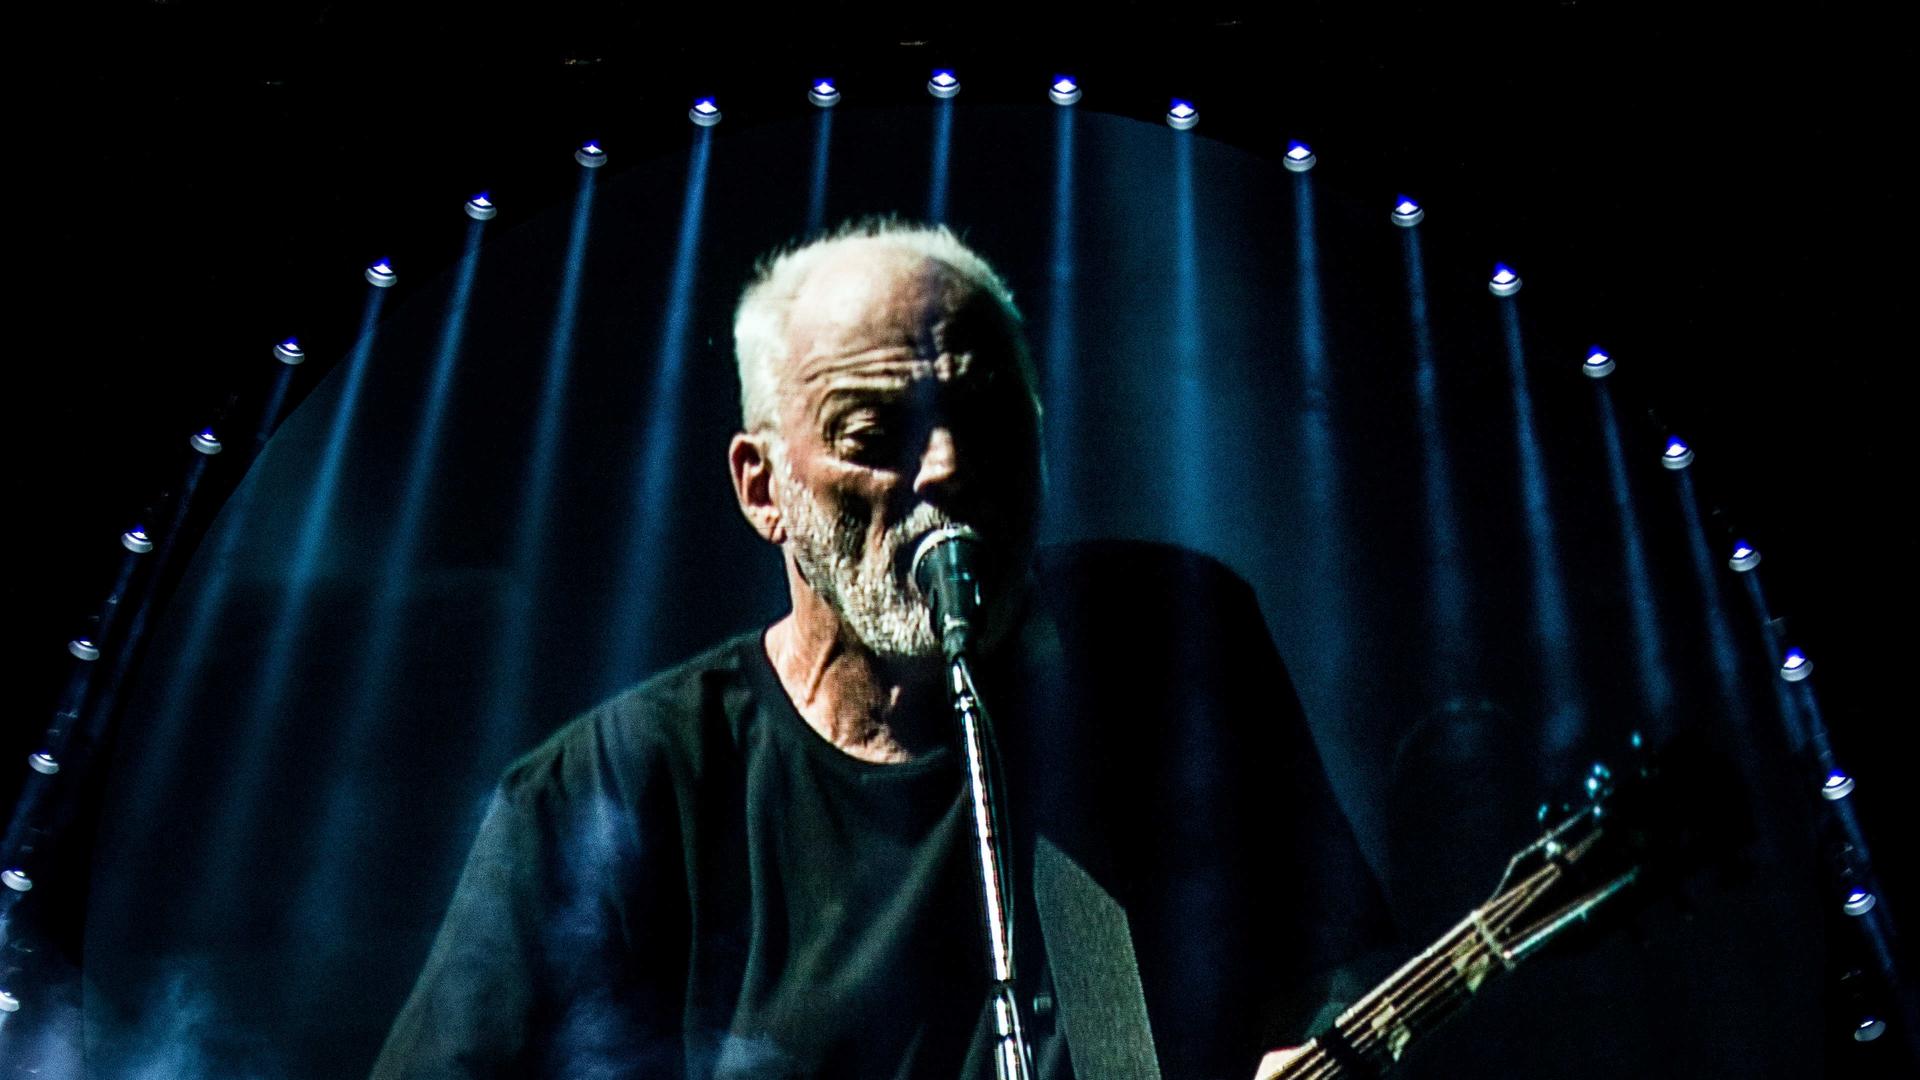 David Gilmour performt auf einer Bühne.